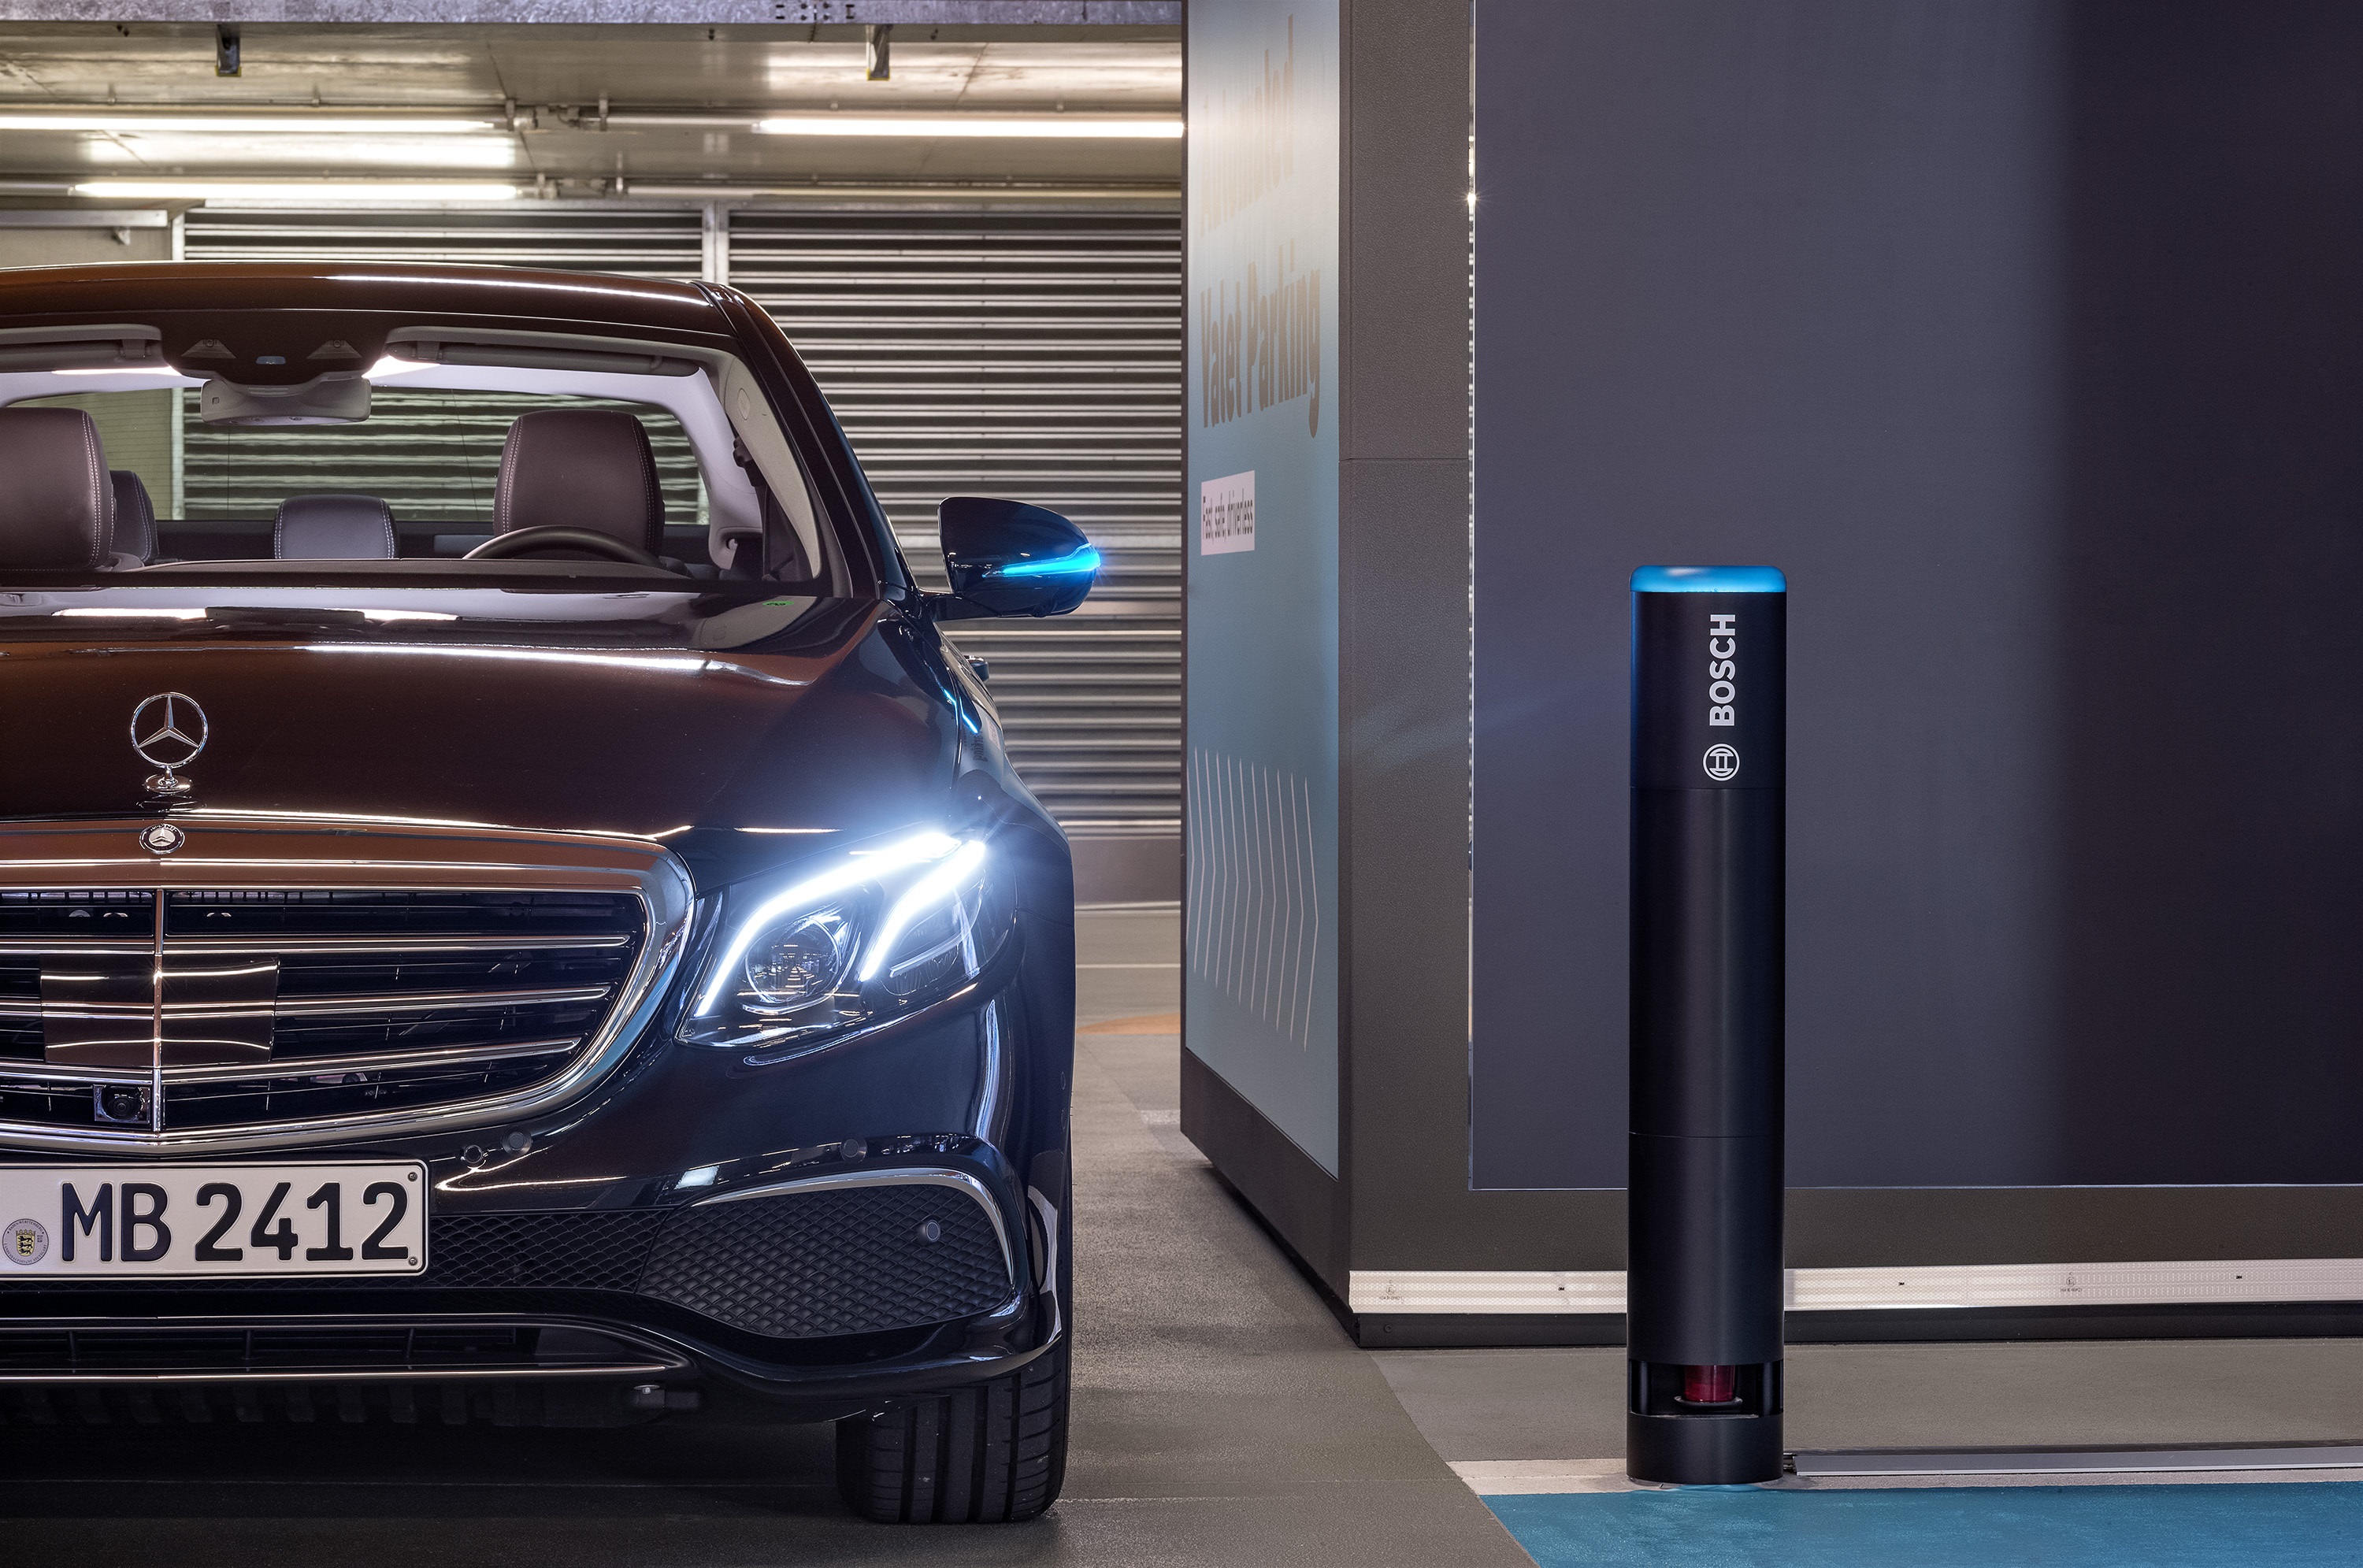 Projeto piloto lançado no estacionamento do Museu da Mercedes-Benz